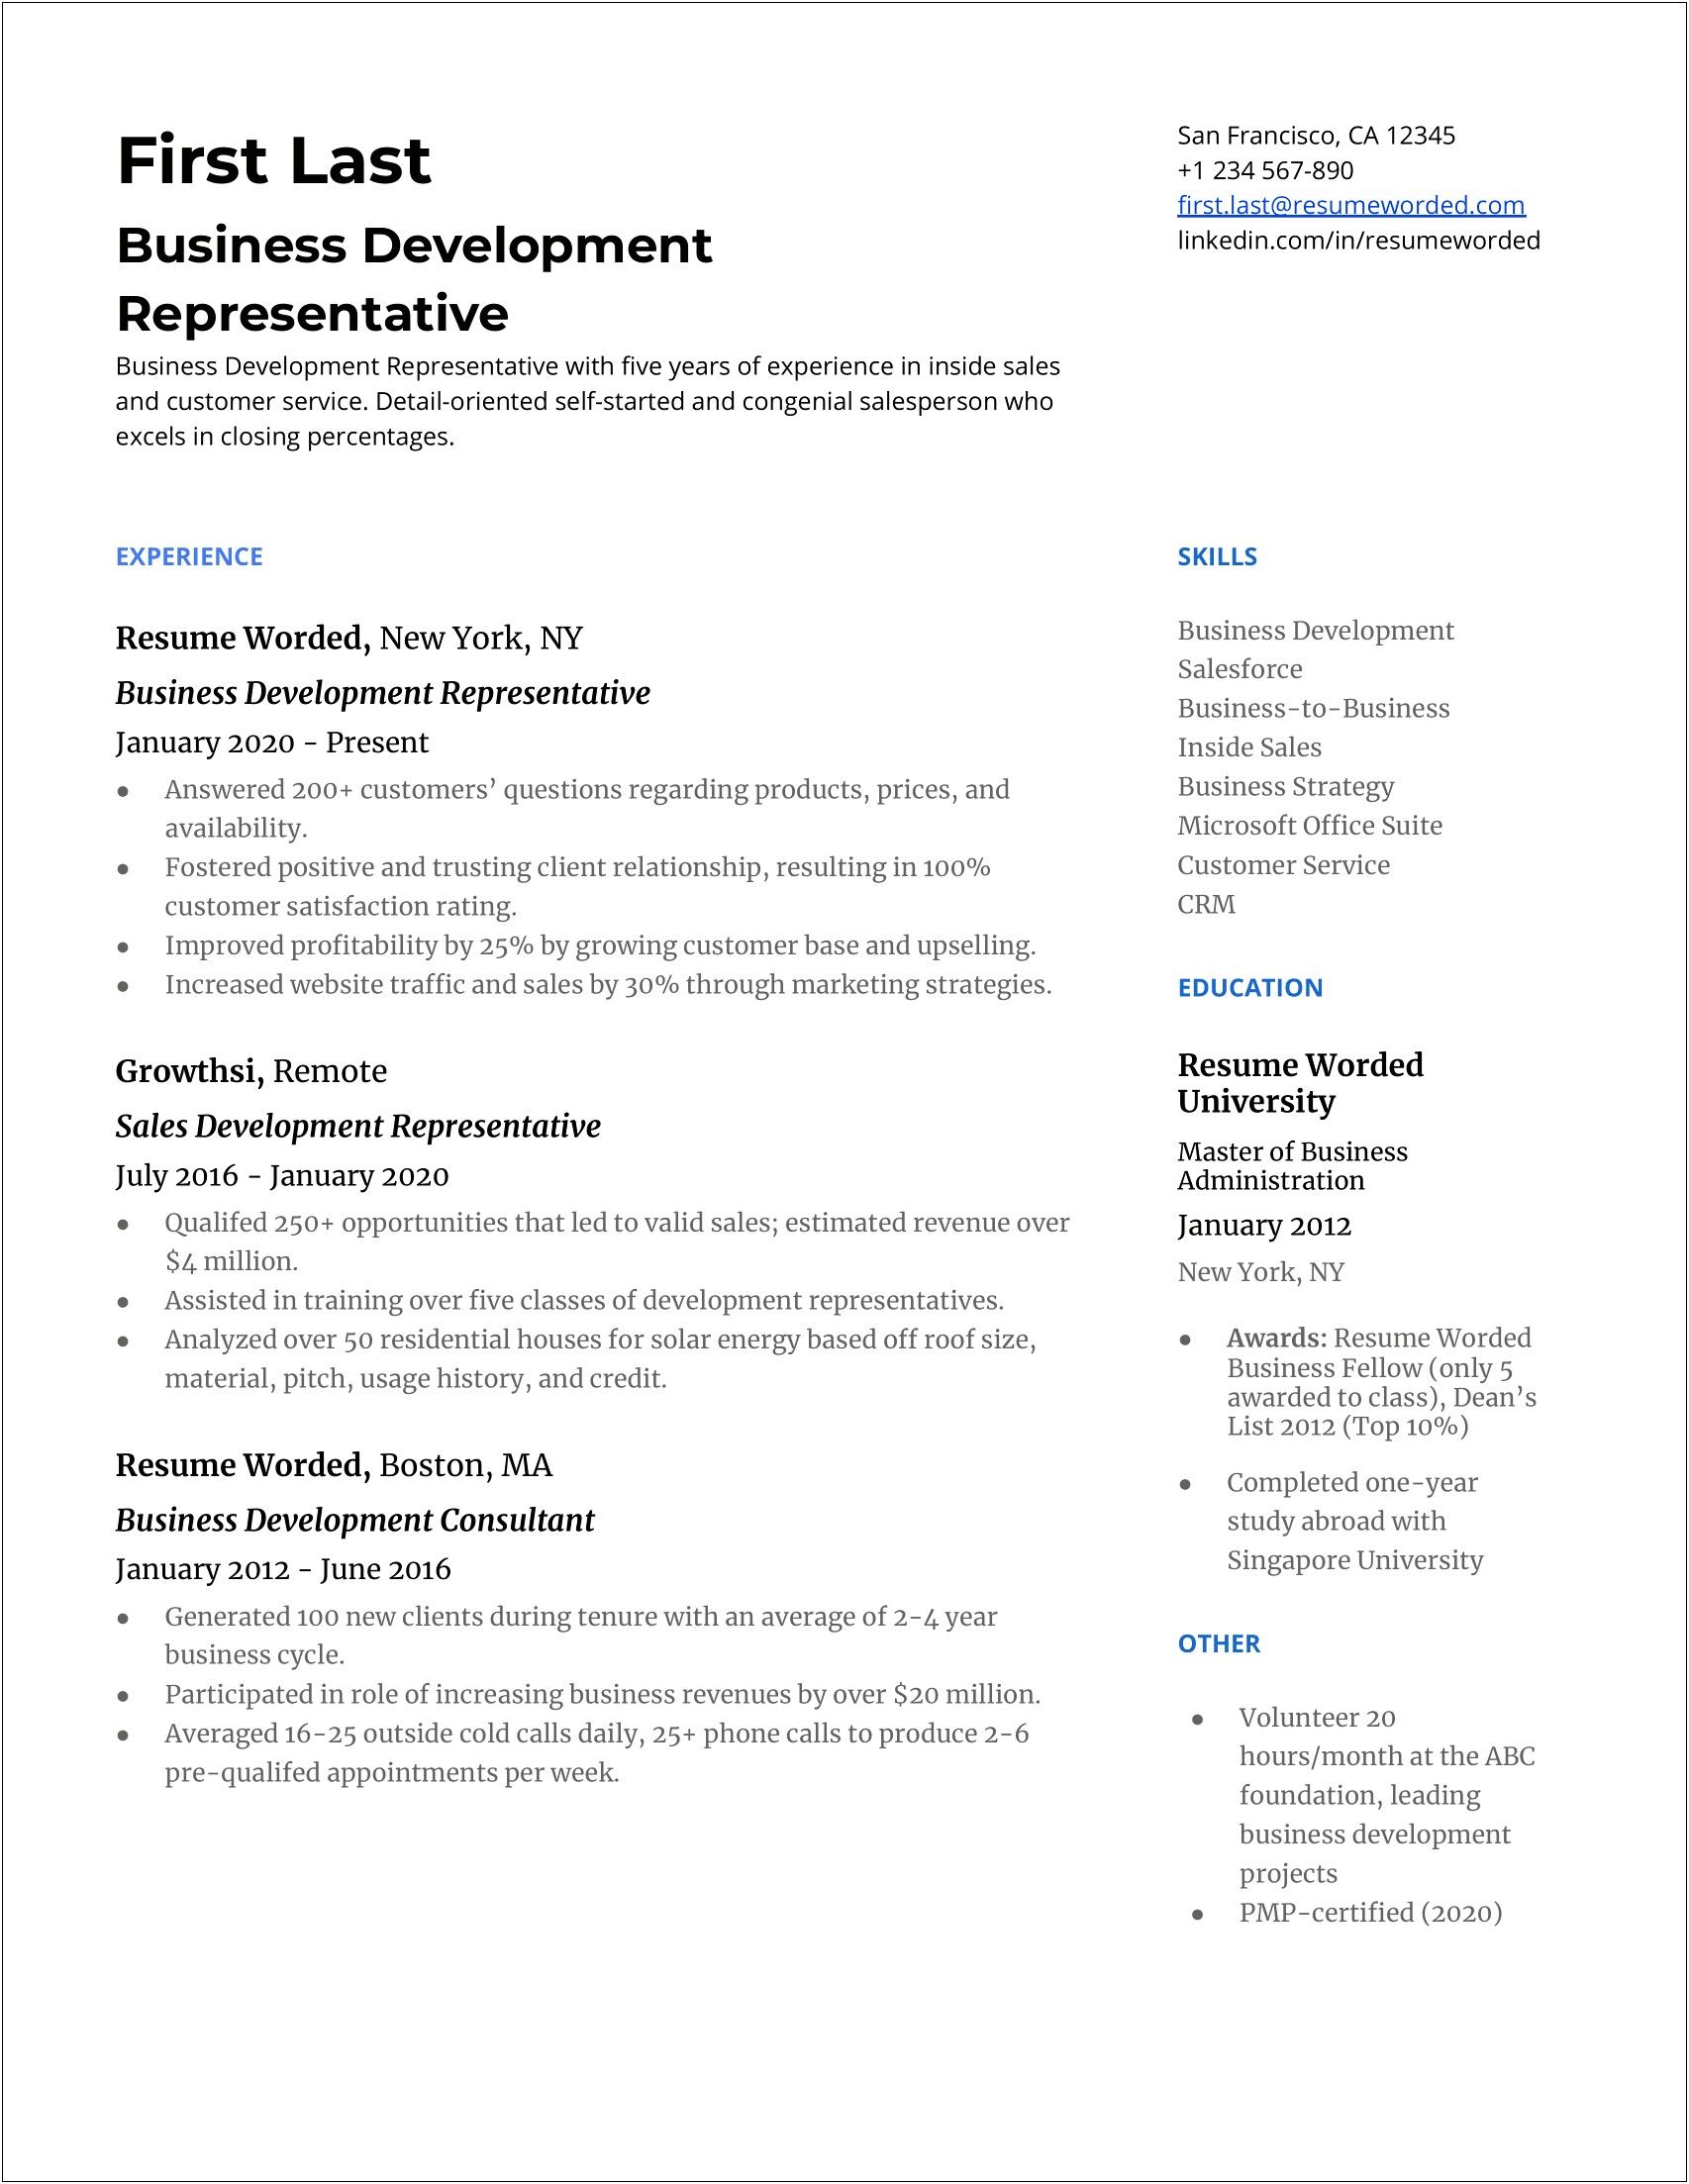 Sales Development Representative Job Description Resume